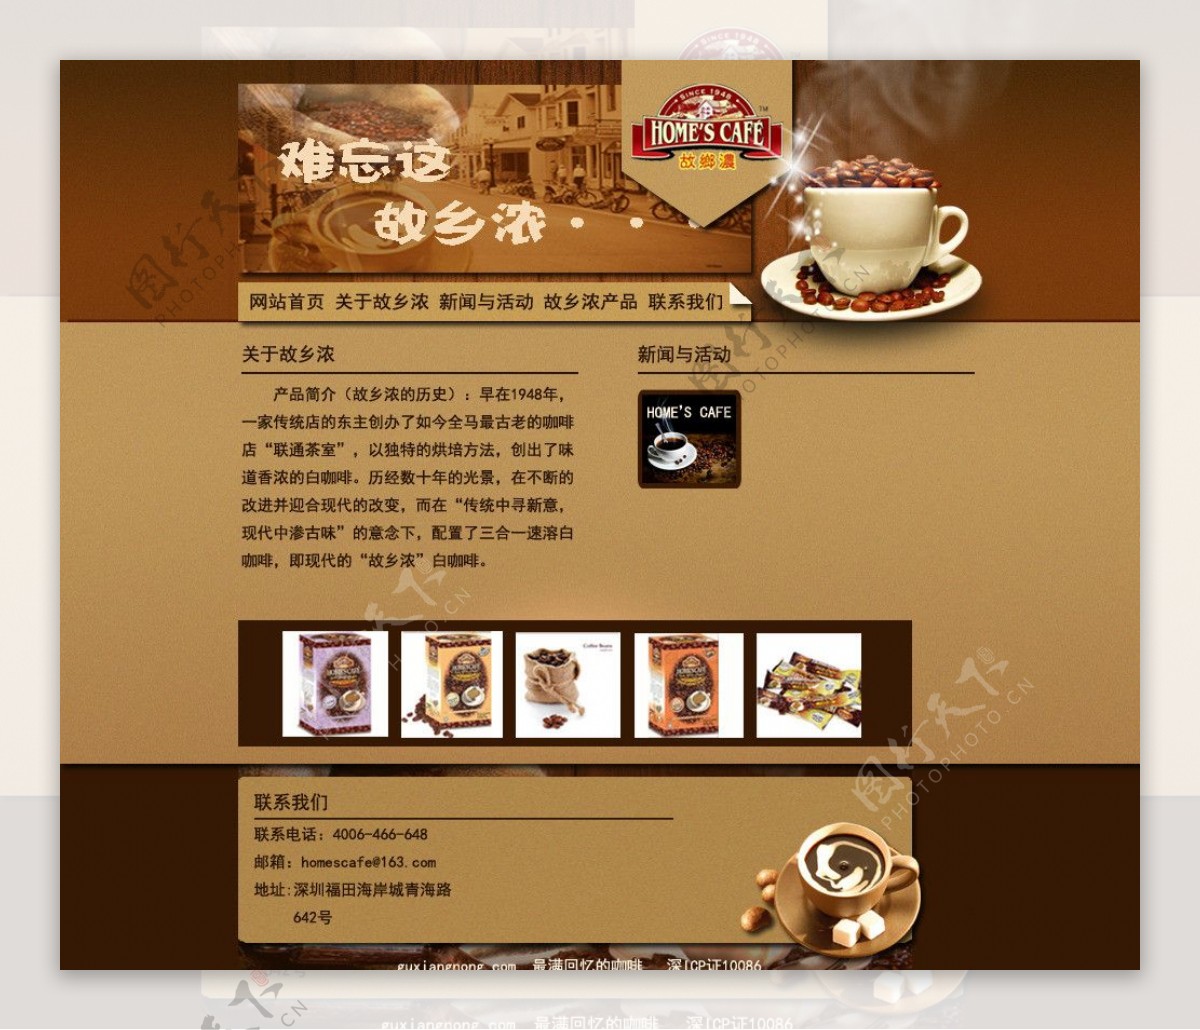 故乡浓咖啡网站图片